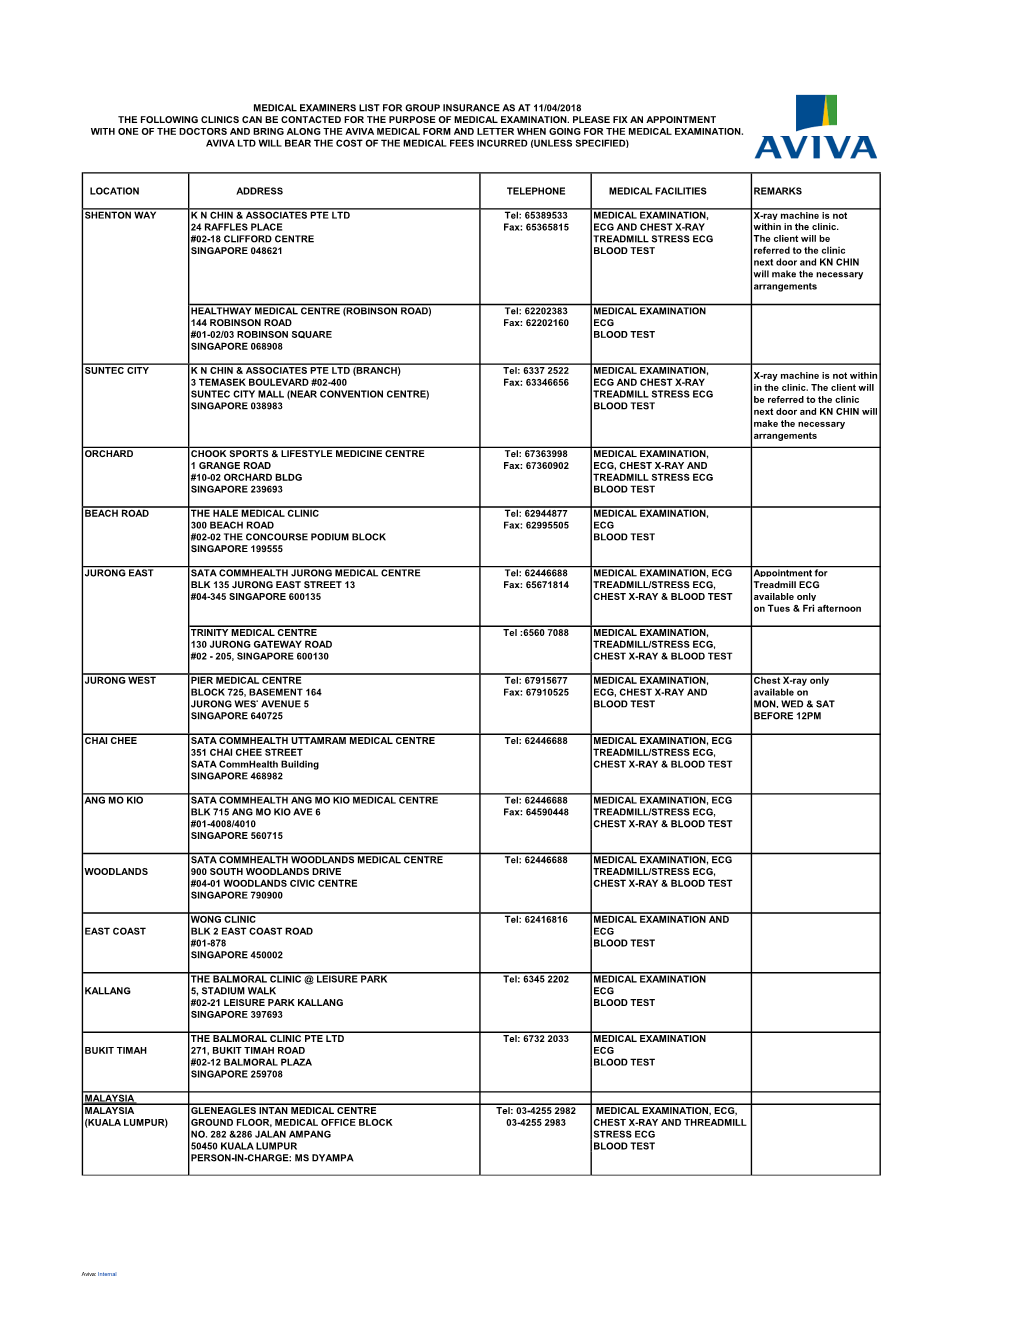 Aviva's Panel of Clinic List (Apr 2018)